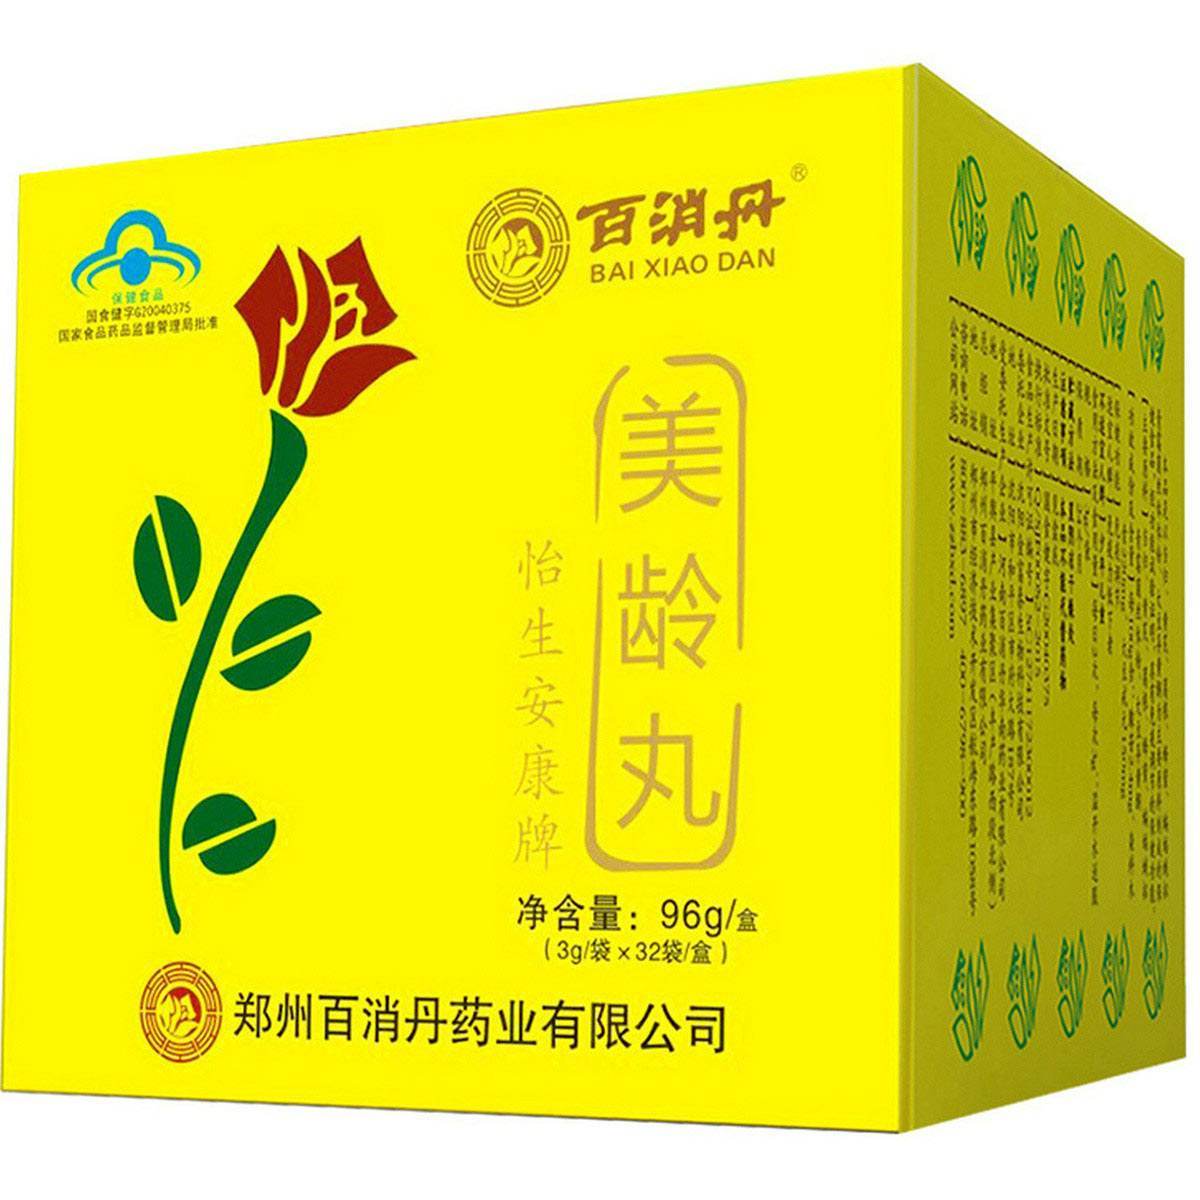 Herbal Supplement Bai Xiao Dan / Baixiao Dan / Bai Xiao Pills / Baixiao Pills